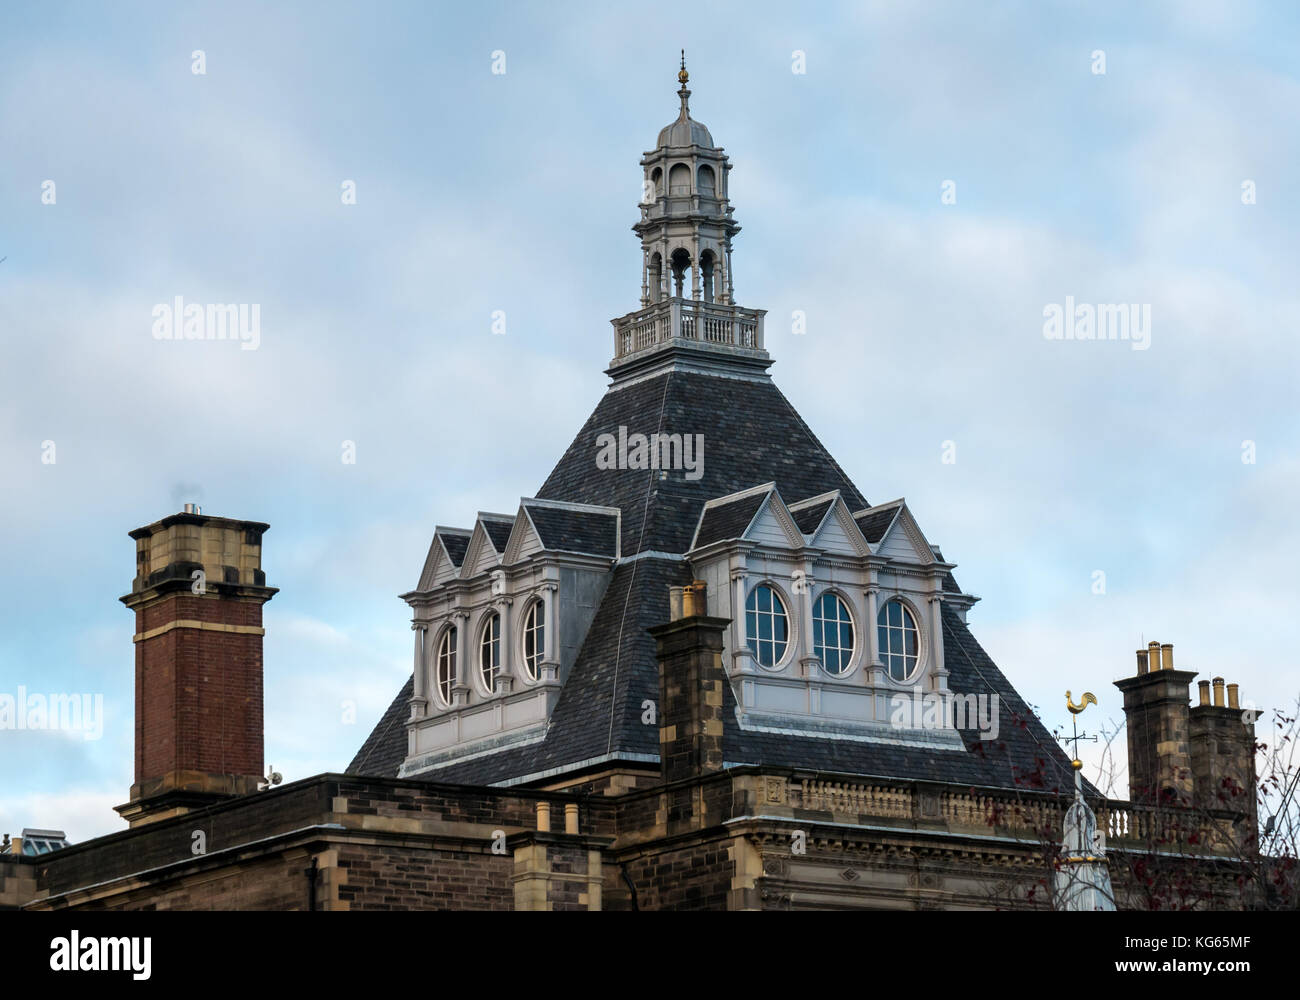 Toit et flèche ornés du bâtiment victorien de la bibliothèque centrale, financé par Andrew Carnegie, Édimbourg, Écosse, Royaume-Uni Banque D'Images